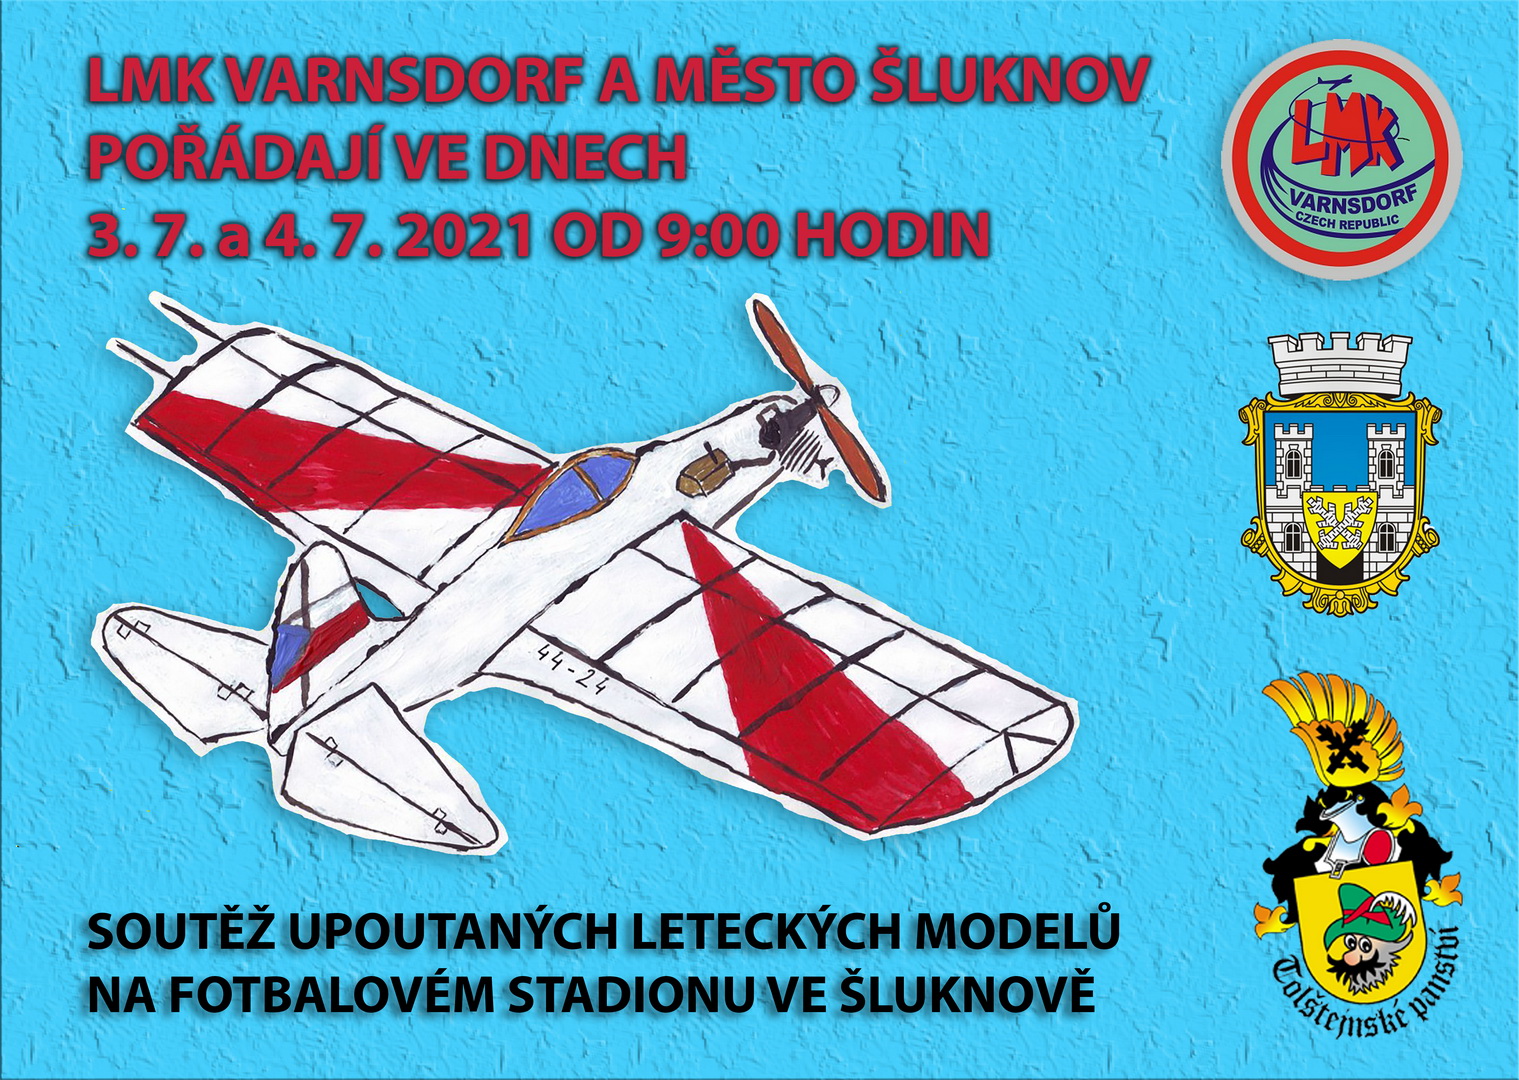 Soutěž upoutaných leteckých modelů na fotbalovém stadionu ve Šluknově